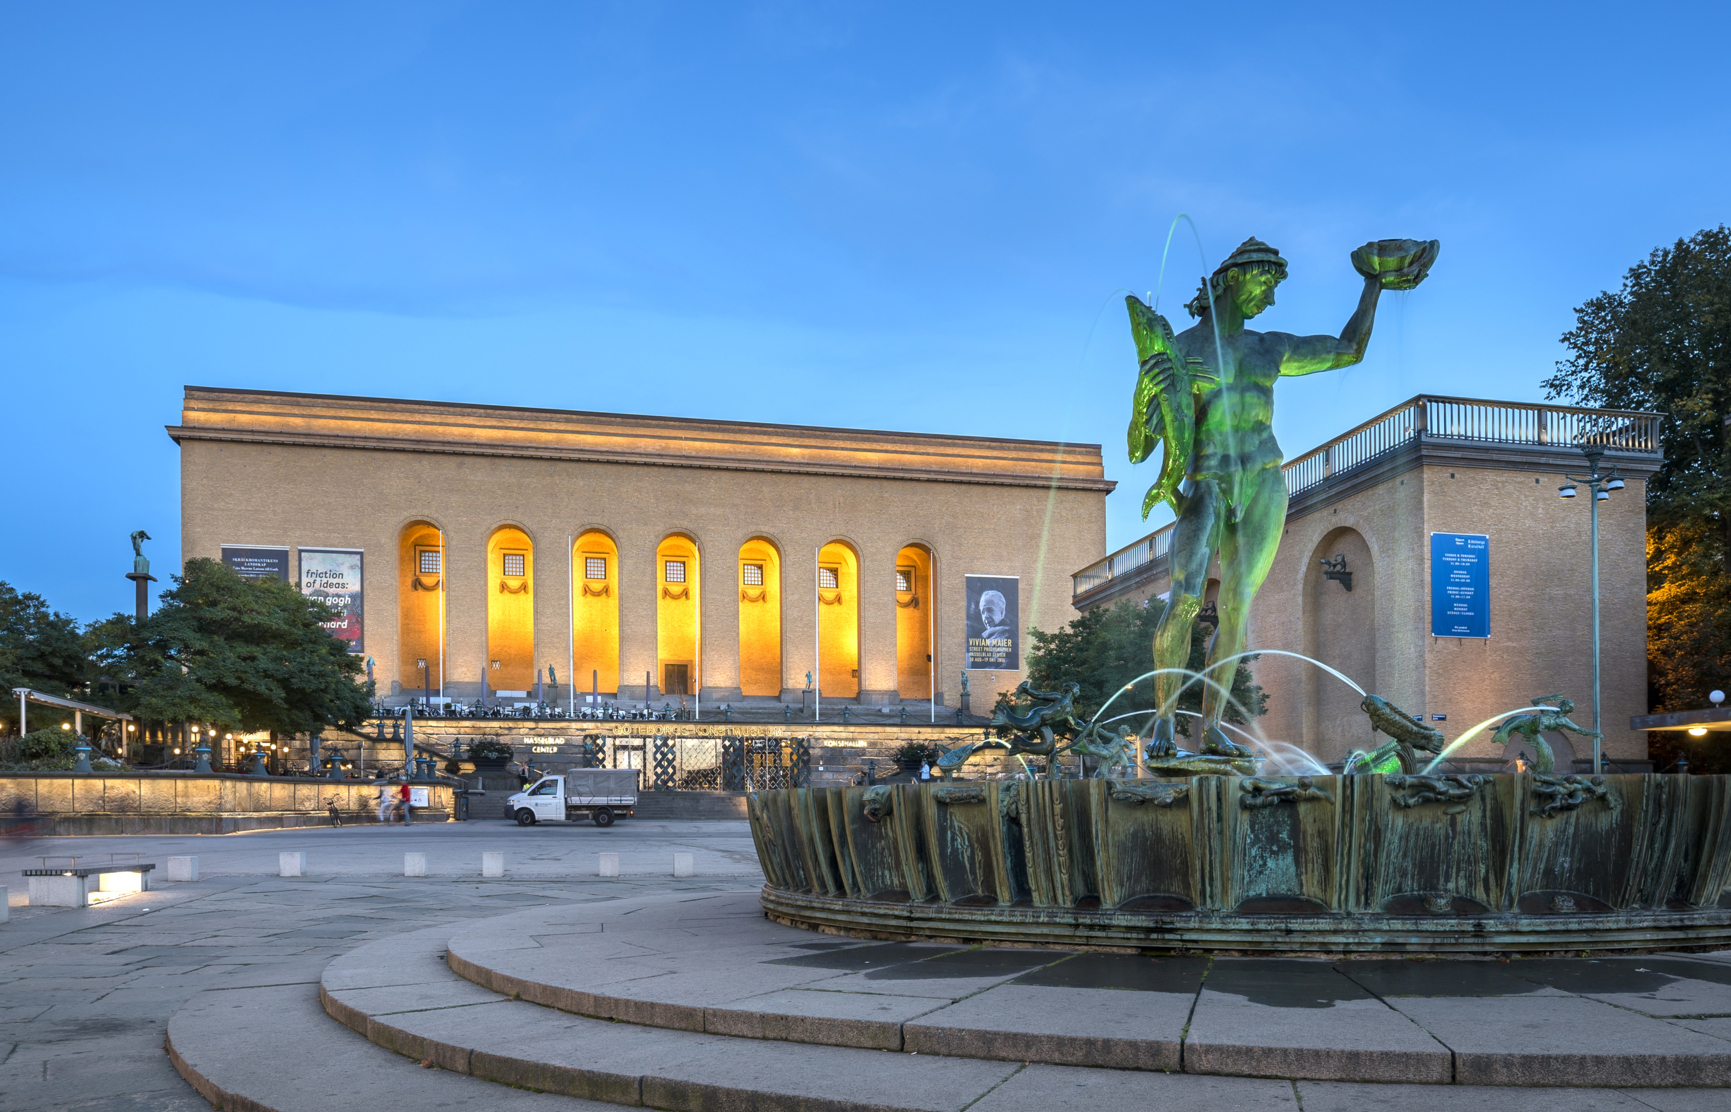 Poseidon-statyn och Göteborgs konstmuseum lyser upp vid Götaplatsen